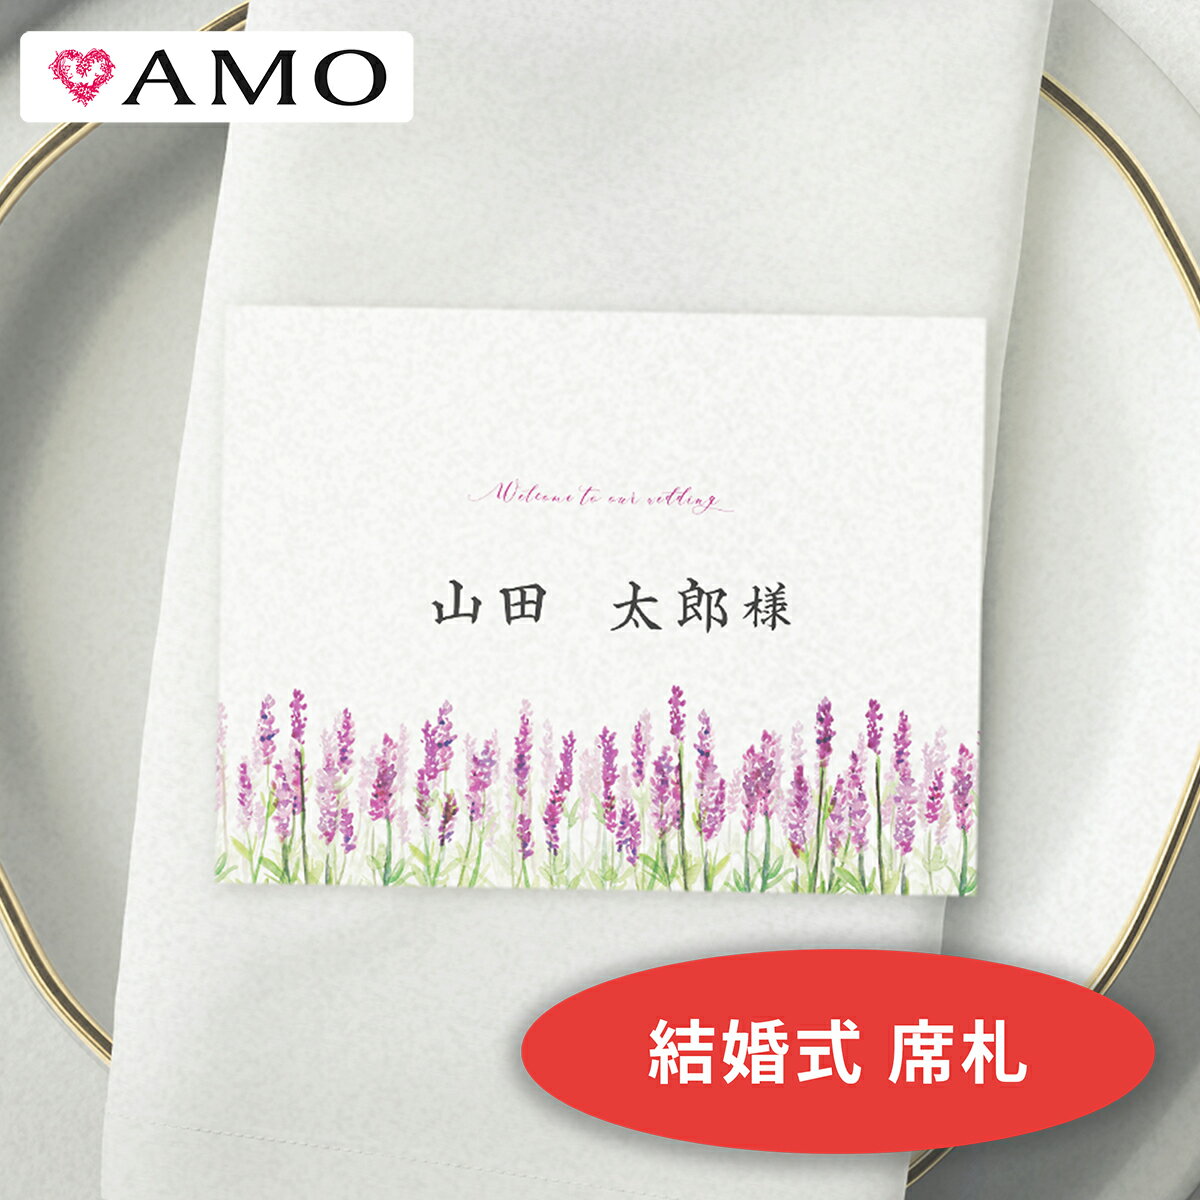 AMO 結婚式 席札 手作りキット ラベンダー水彩 インクジェット対応 【30部までメール便可】